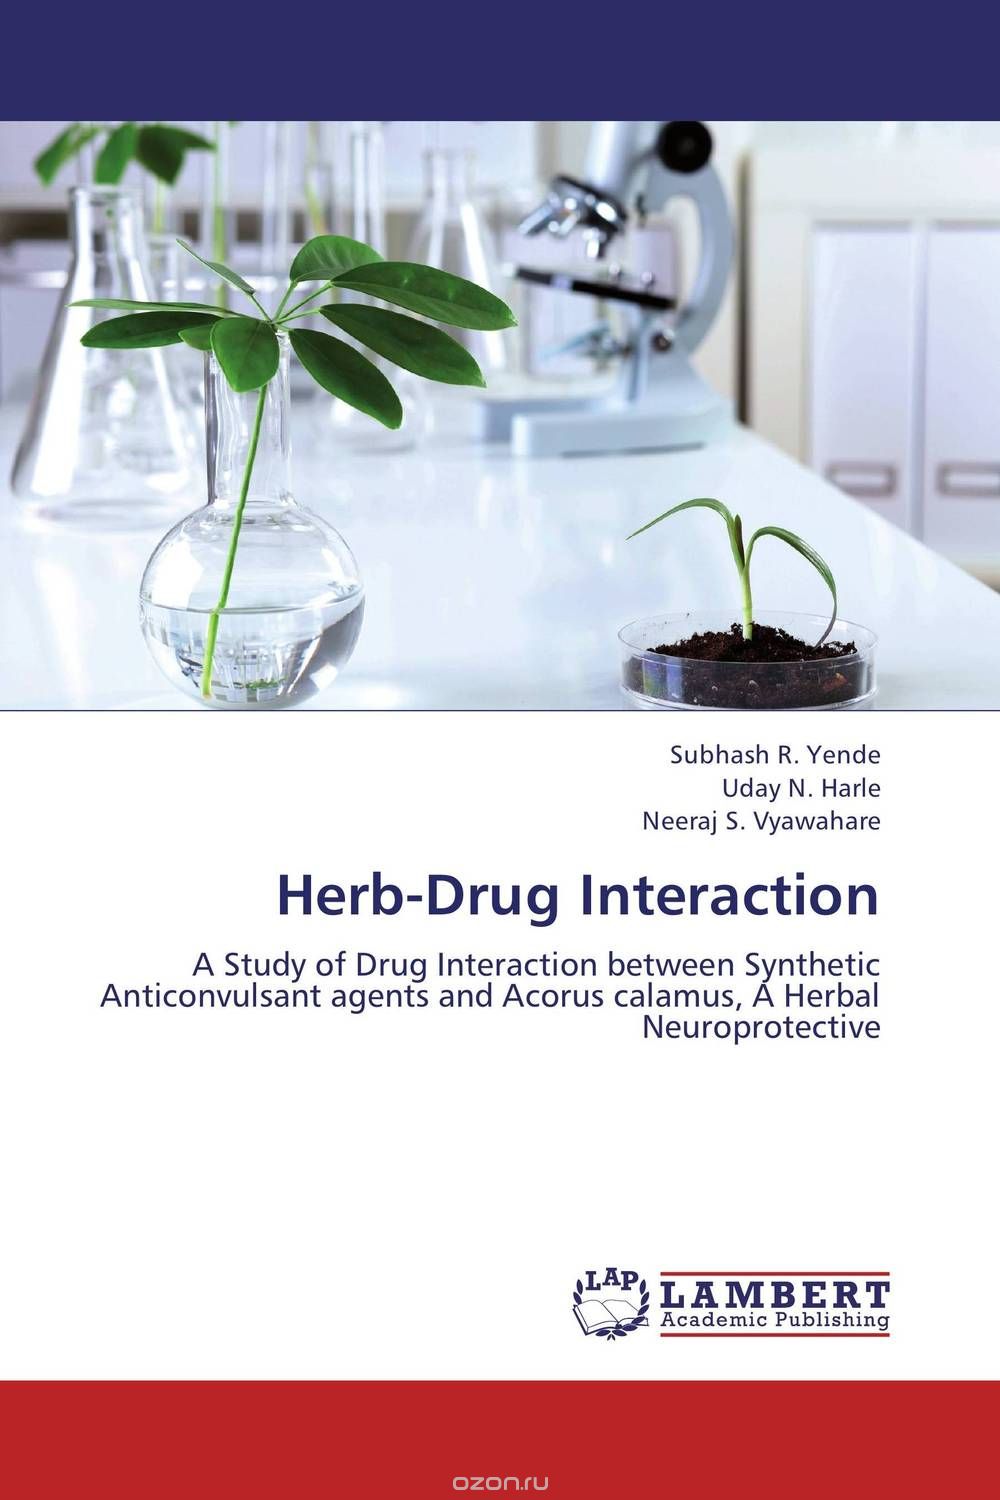 Скачать книгу "Herb-Drug Interaction"